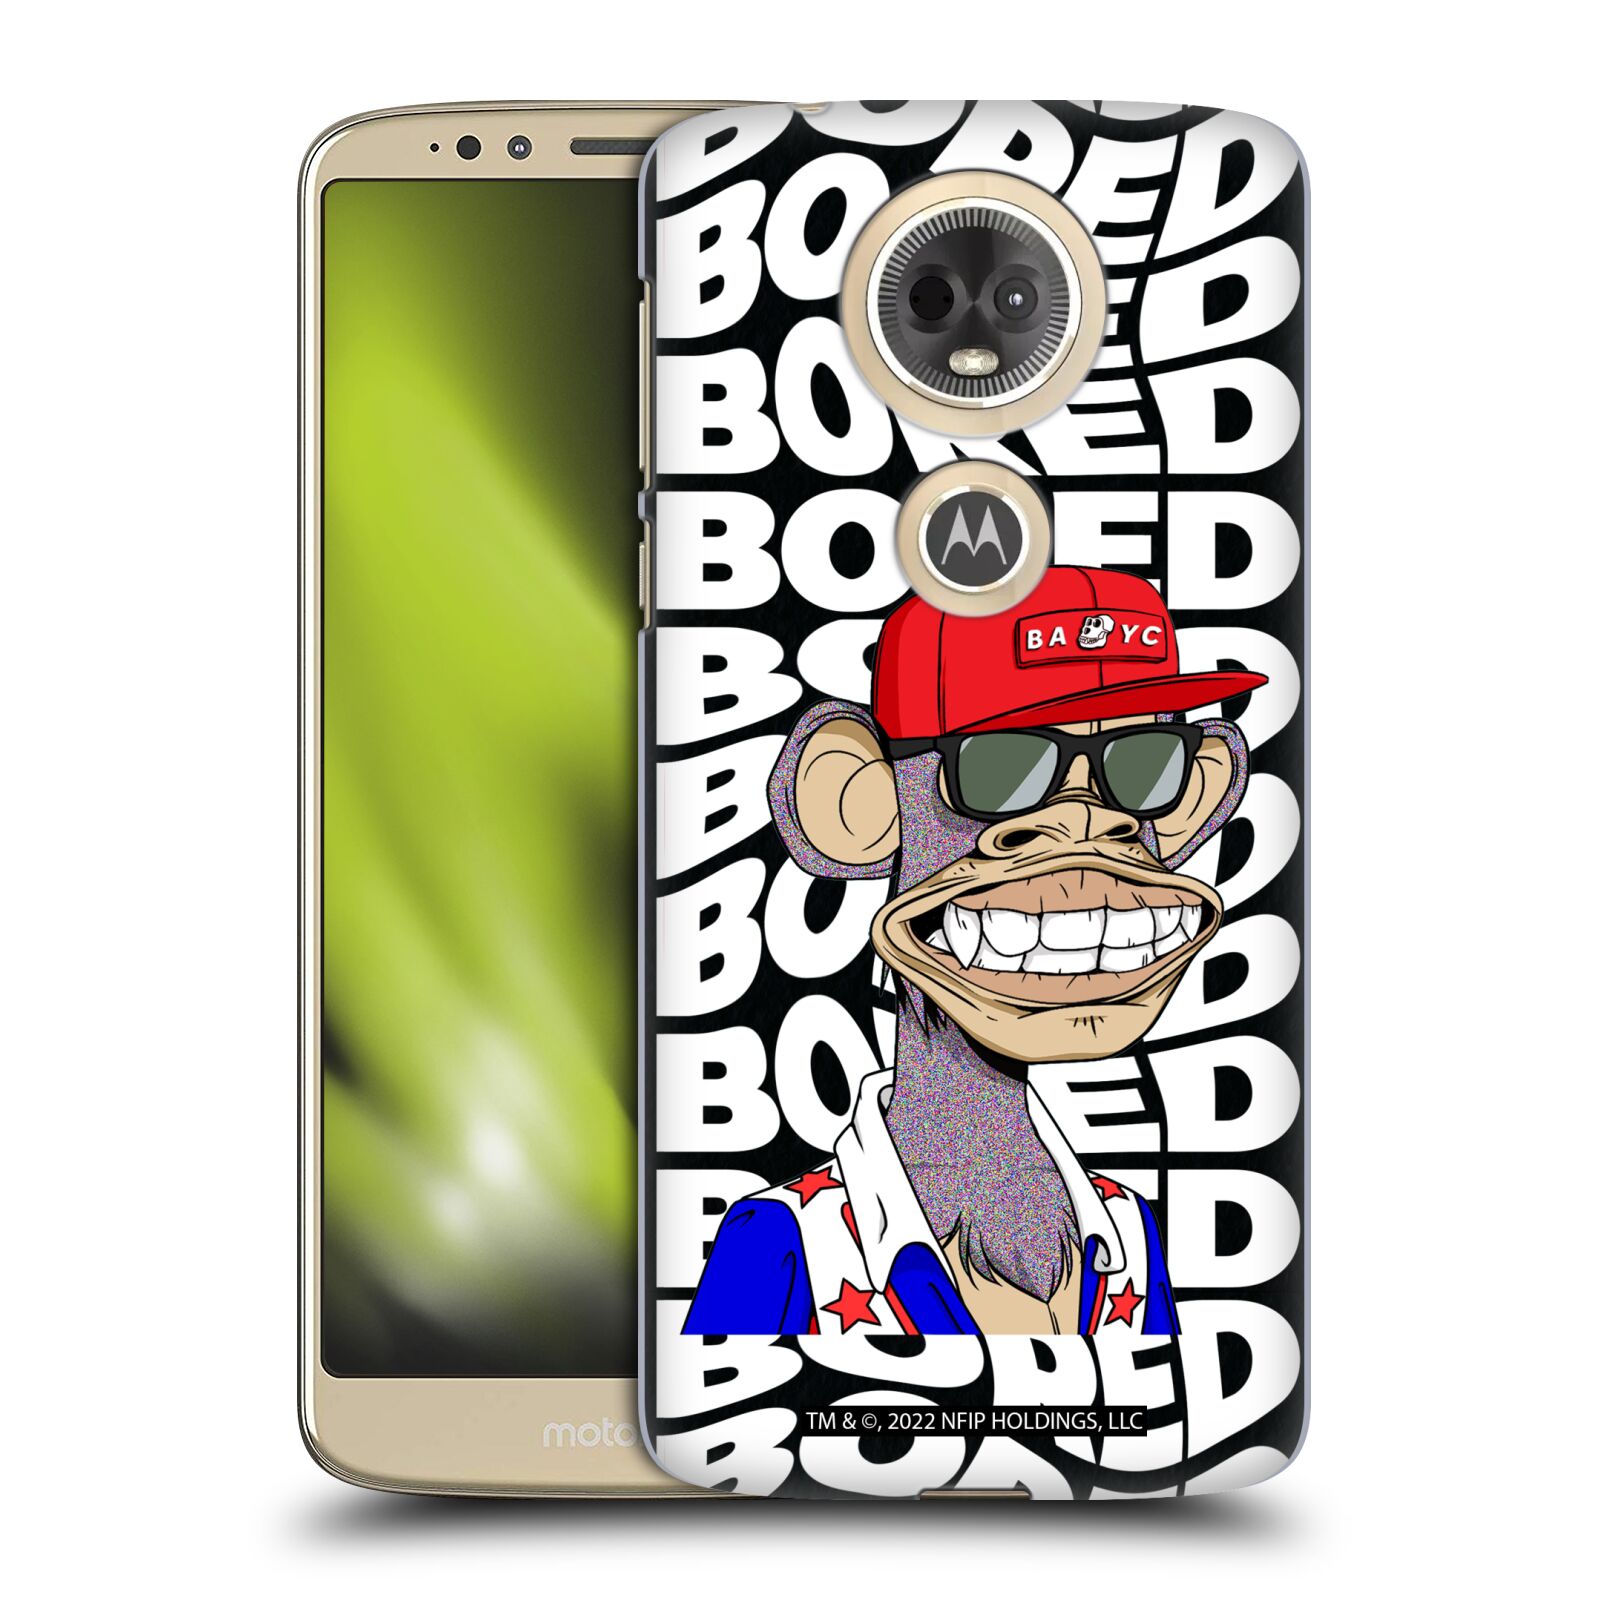 Pouzdro na mobil Motorola Moto E5 PLUS - HEAD CASE - Bored of Directors - Ape 6152